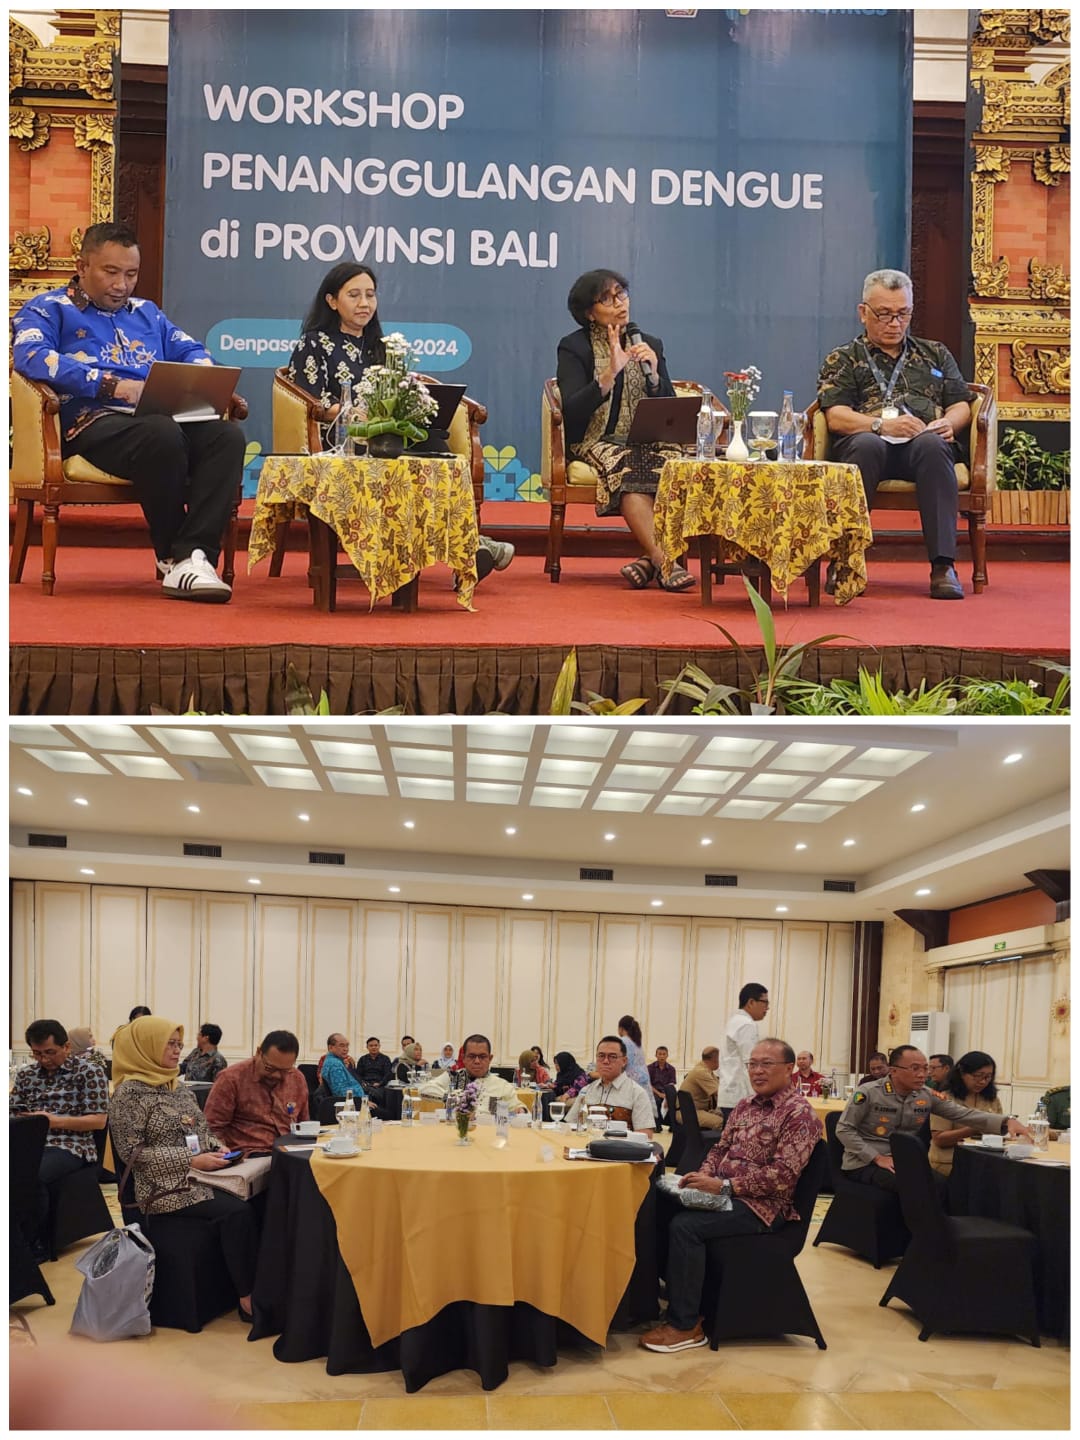 El jefe del Departamento de Salud de Bulaeng participó en un taller sobre gestión del dengue celebrado en la provincia de Bali